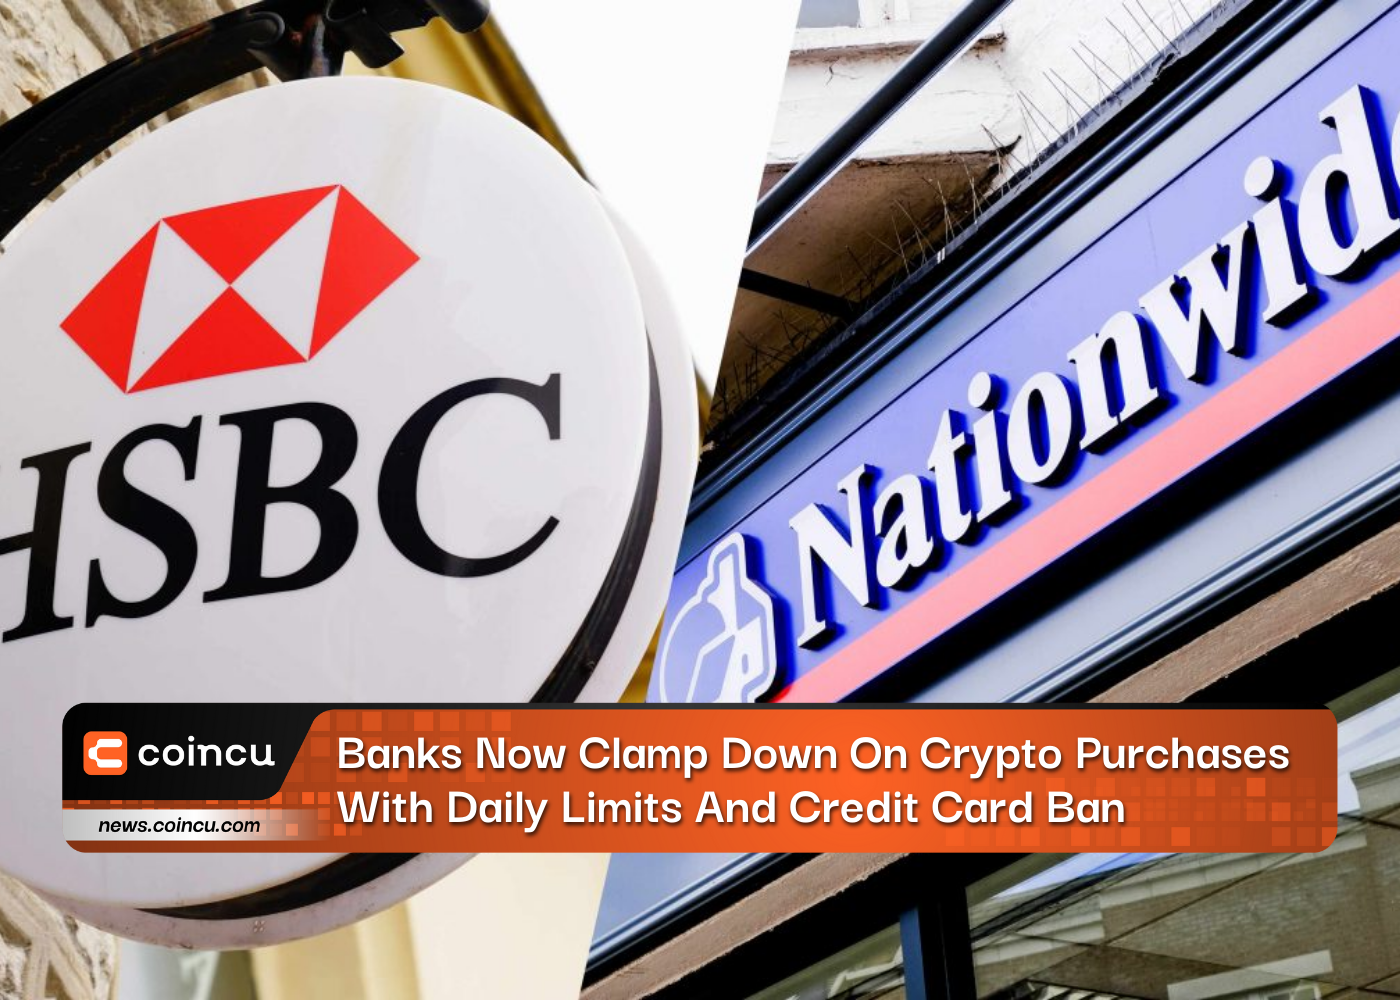 Os bancos agora reprimem as compras de criptografia com limites diários e proibição de cartão de crédito